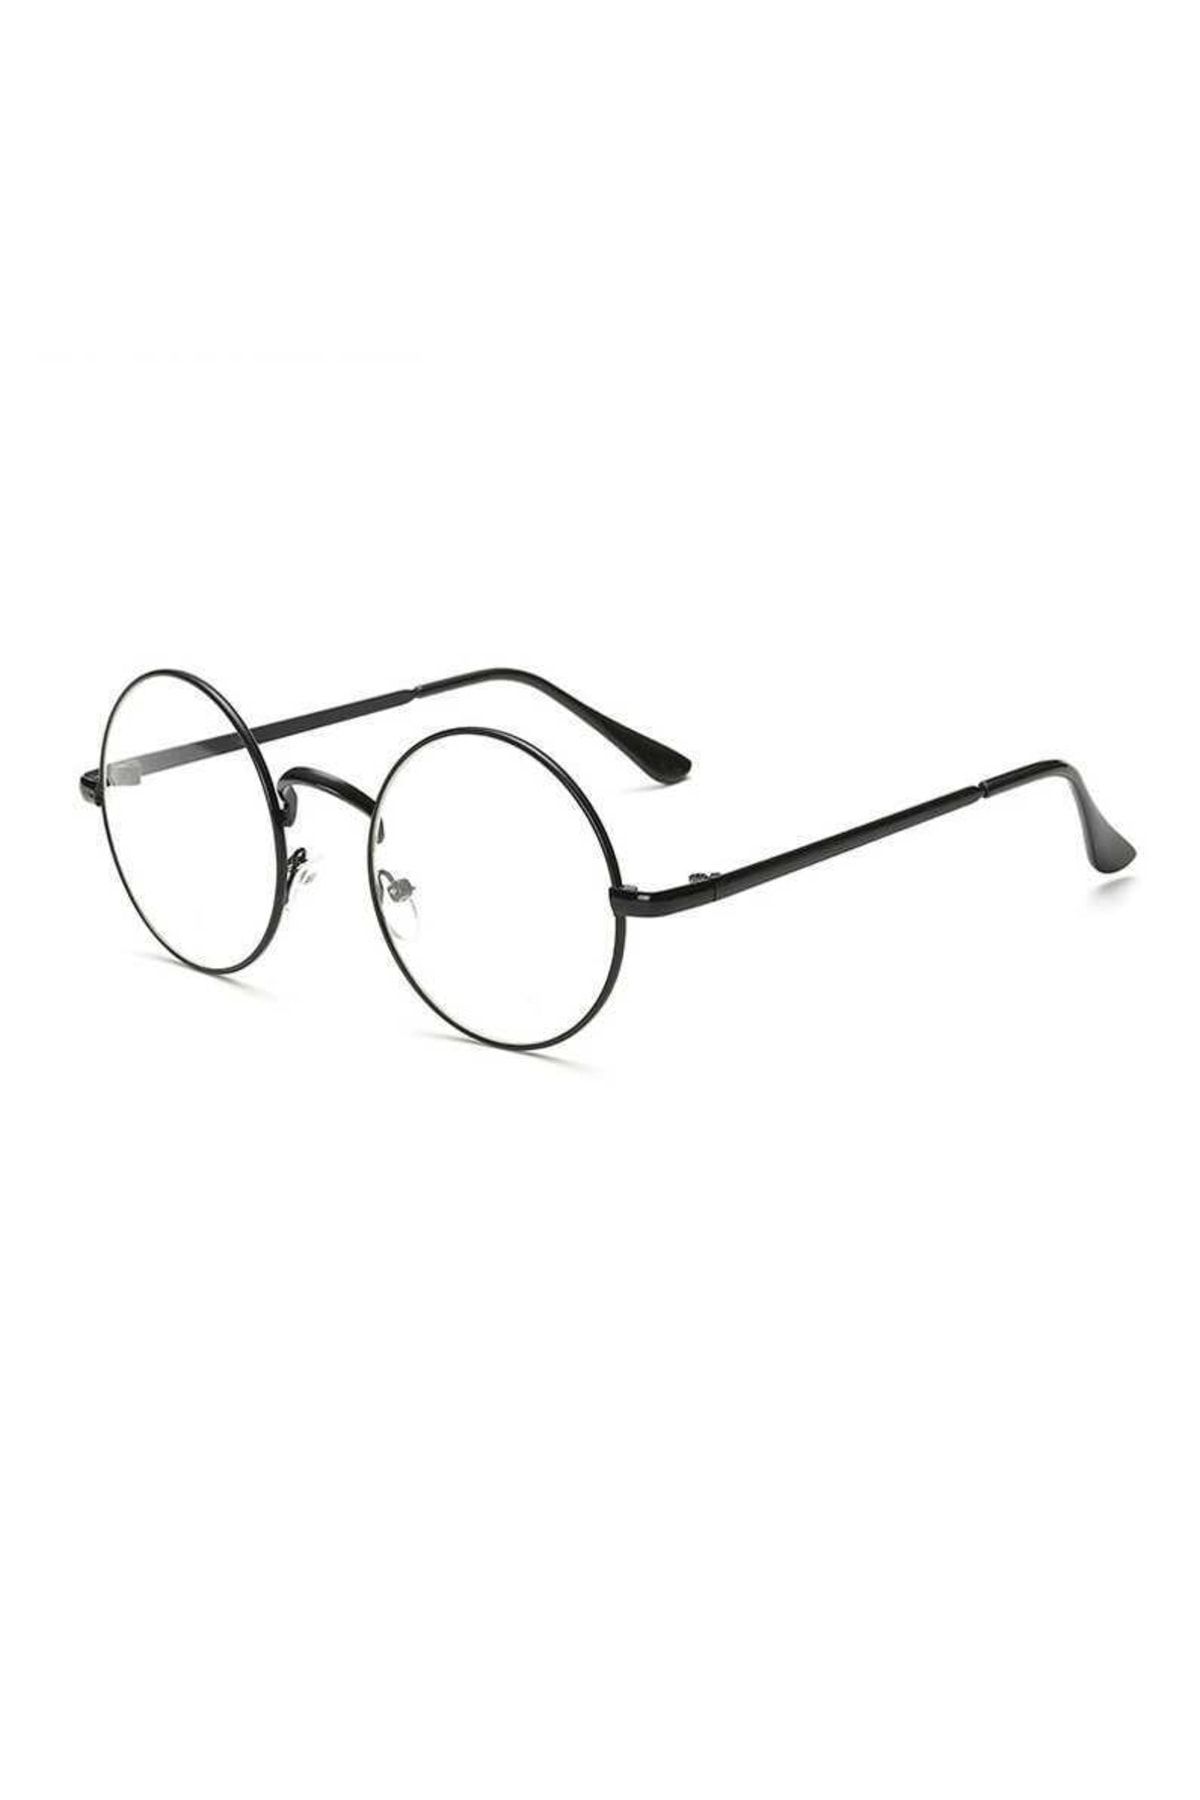 Modalucci Harry Potter Unisex Gözlük